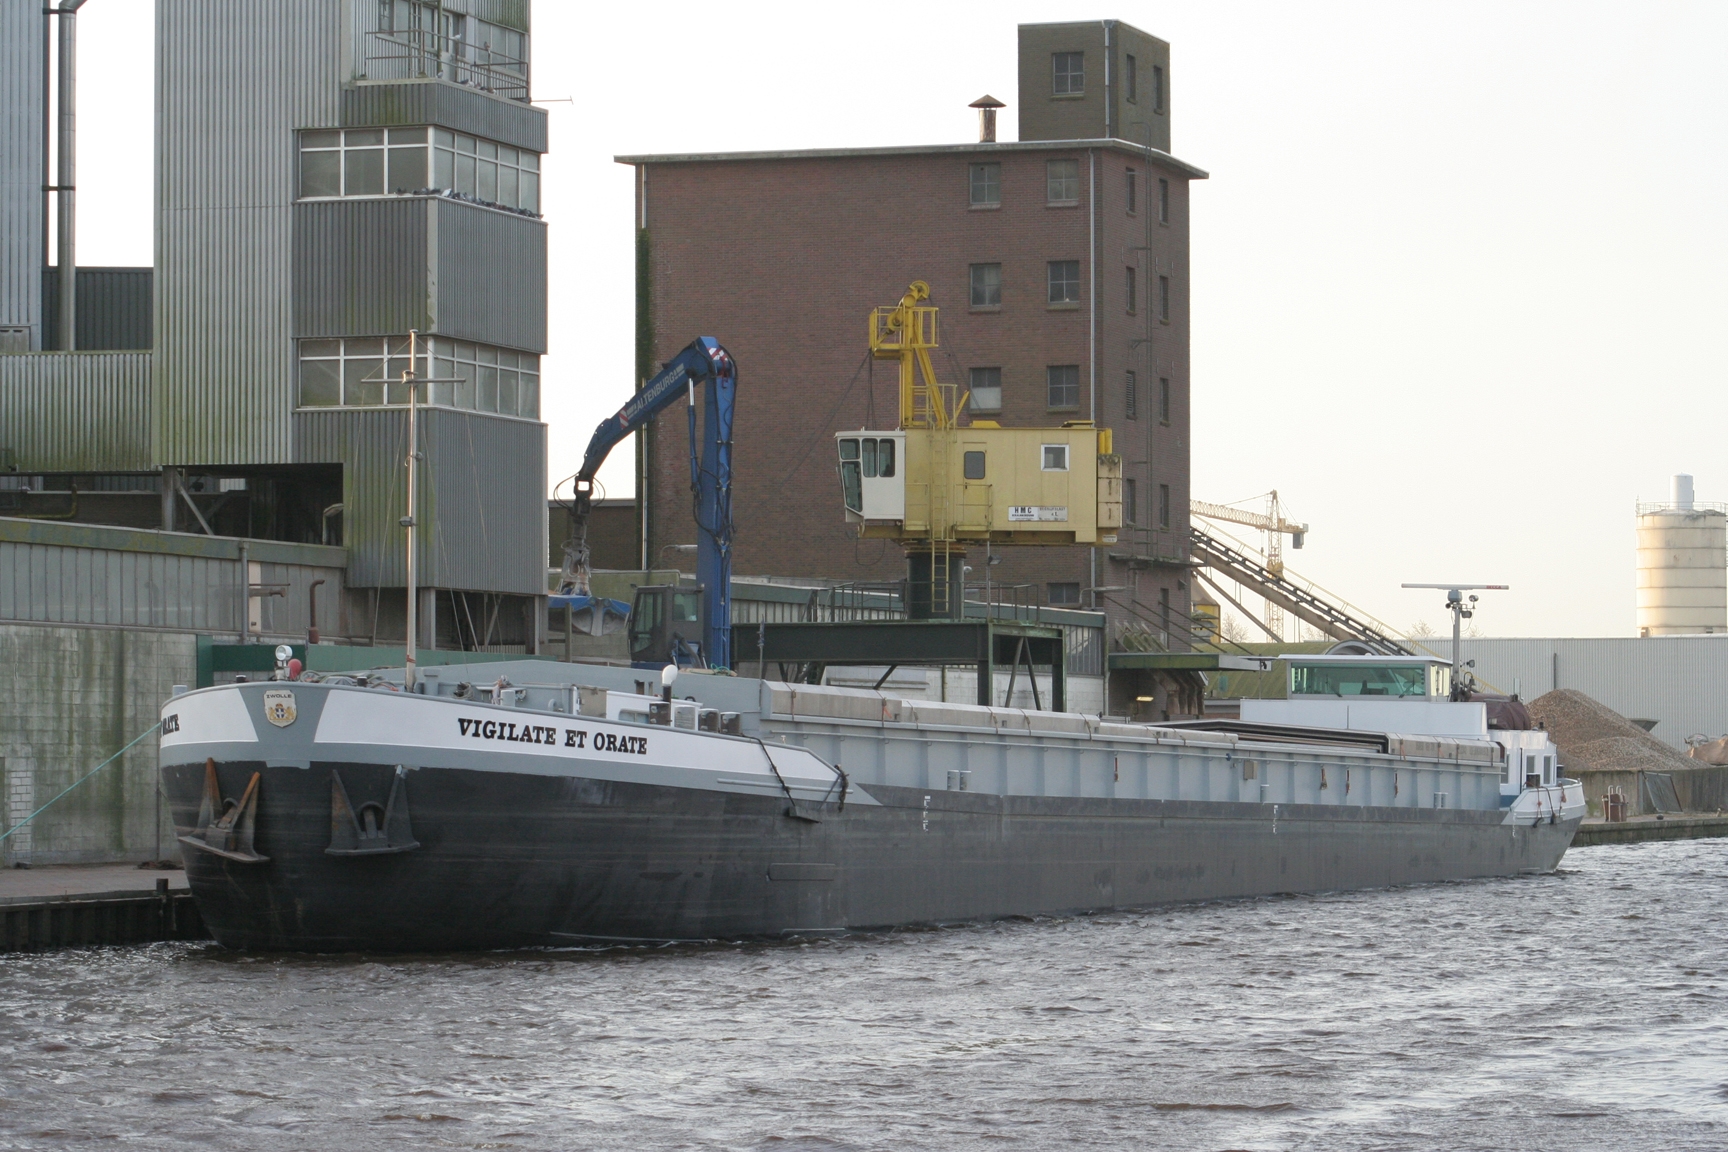 De Vigilate et Orate maakte ooit deel uit van de Dettmer-vloot en kwam nu via België naar Zwolle. (Foto B. Beltman)